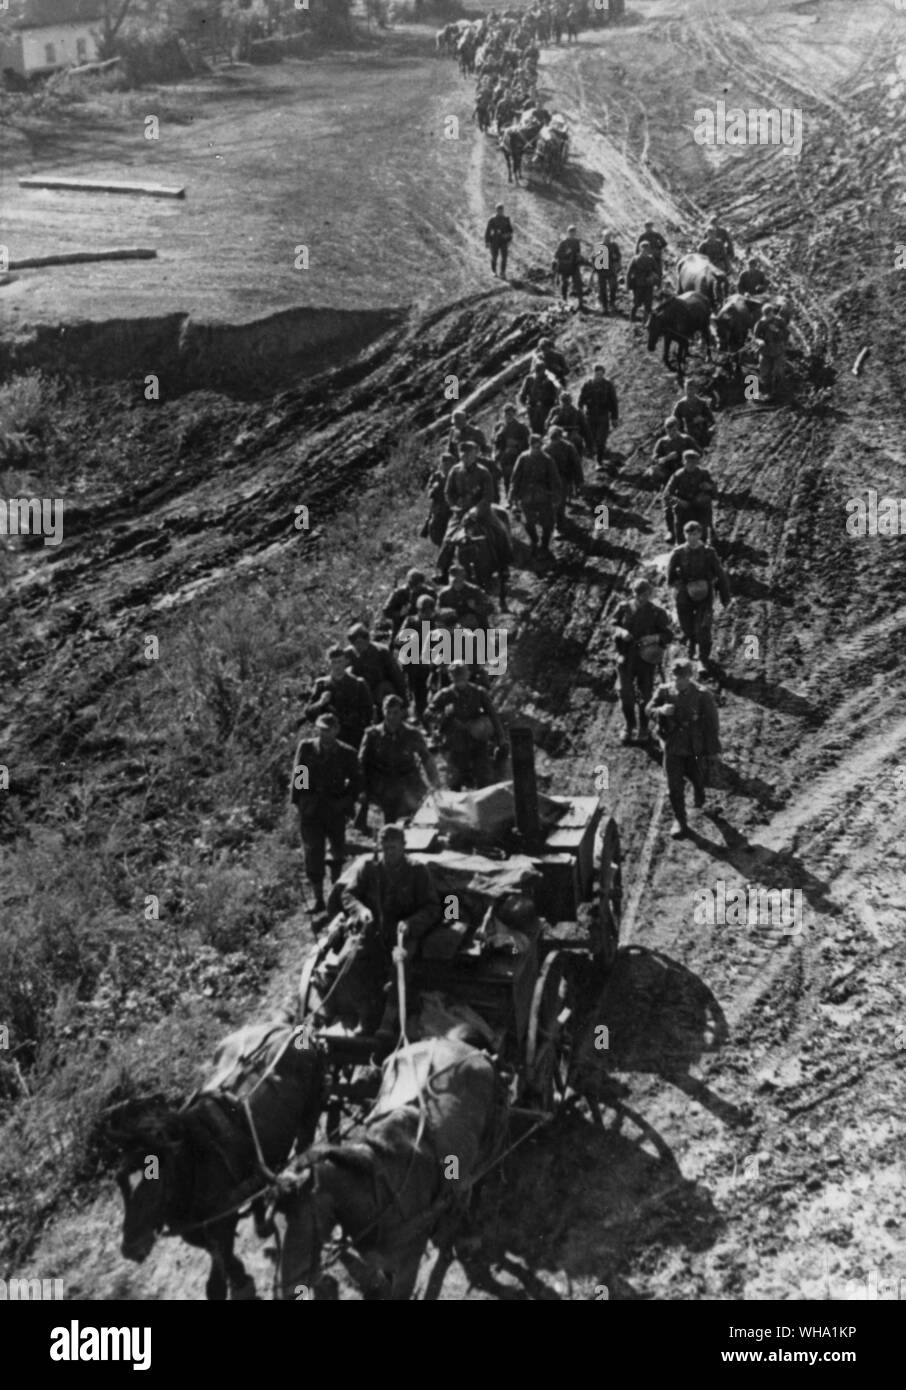 WW2 : la Russie/ Les Allemands admettent leur position désespérée sur le front de l'Est. Photo montre : La grande retraite de la Wehrmacht nazie par temps de pluie à travers les routes boueuses. Novembre 1943. Banque D'Images